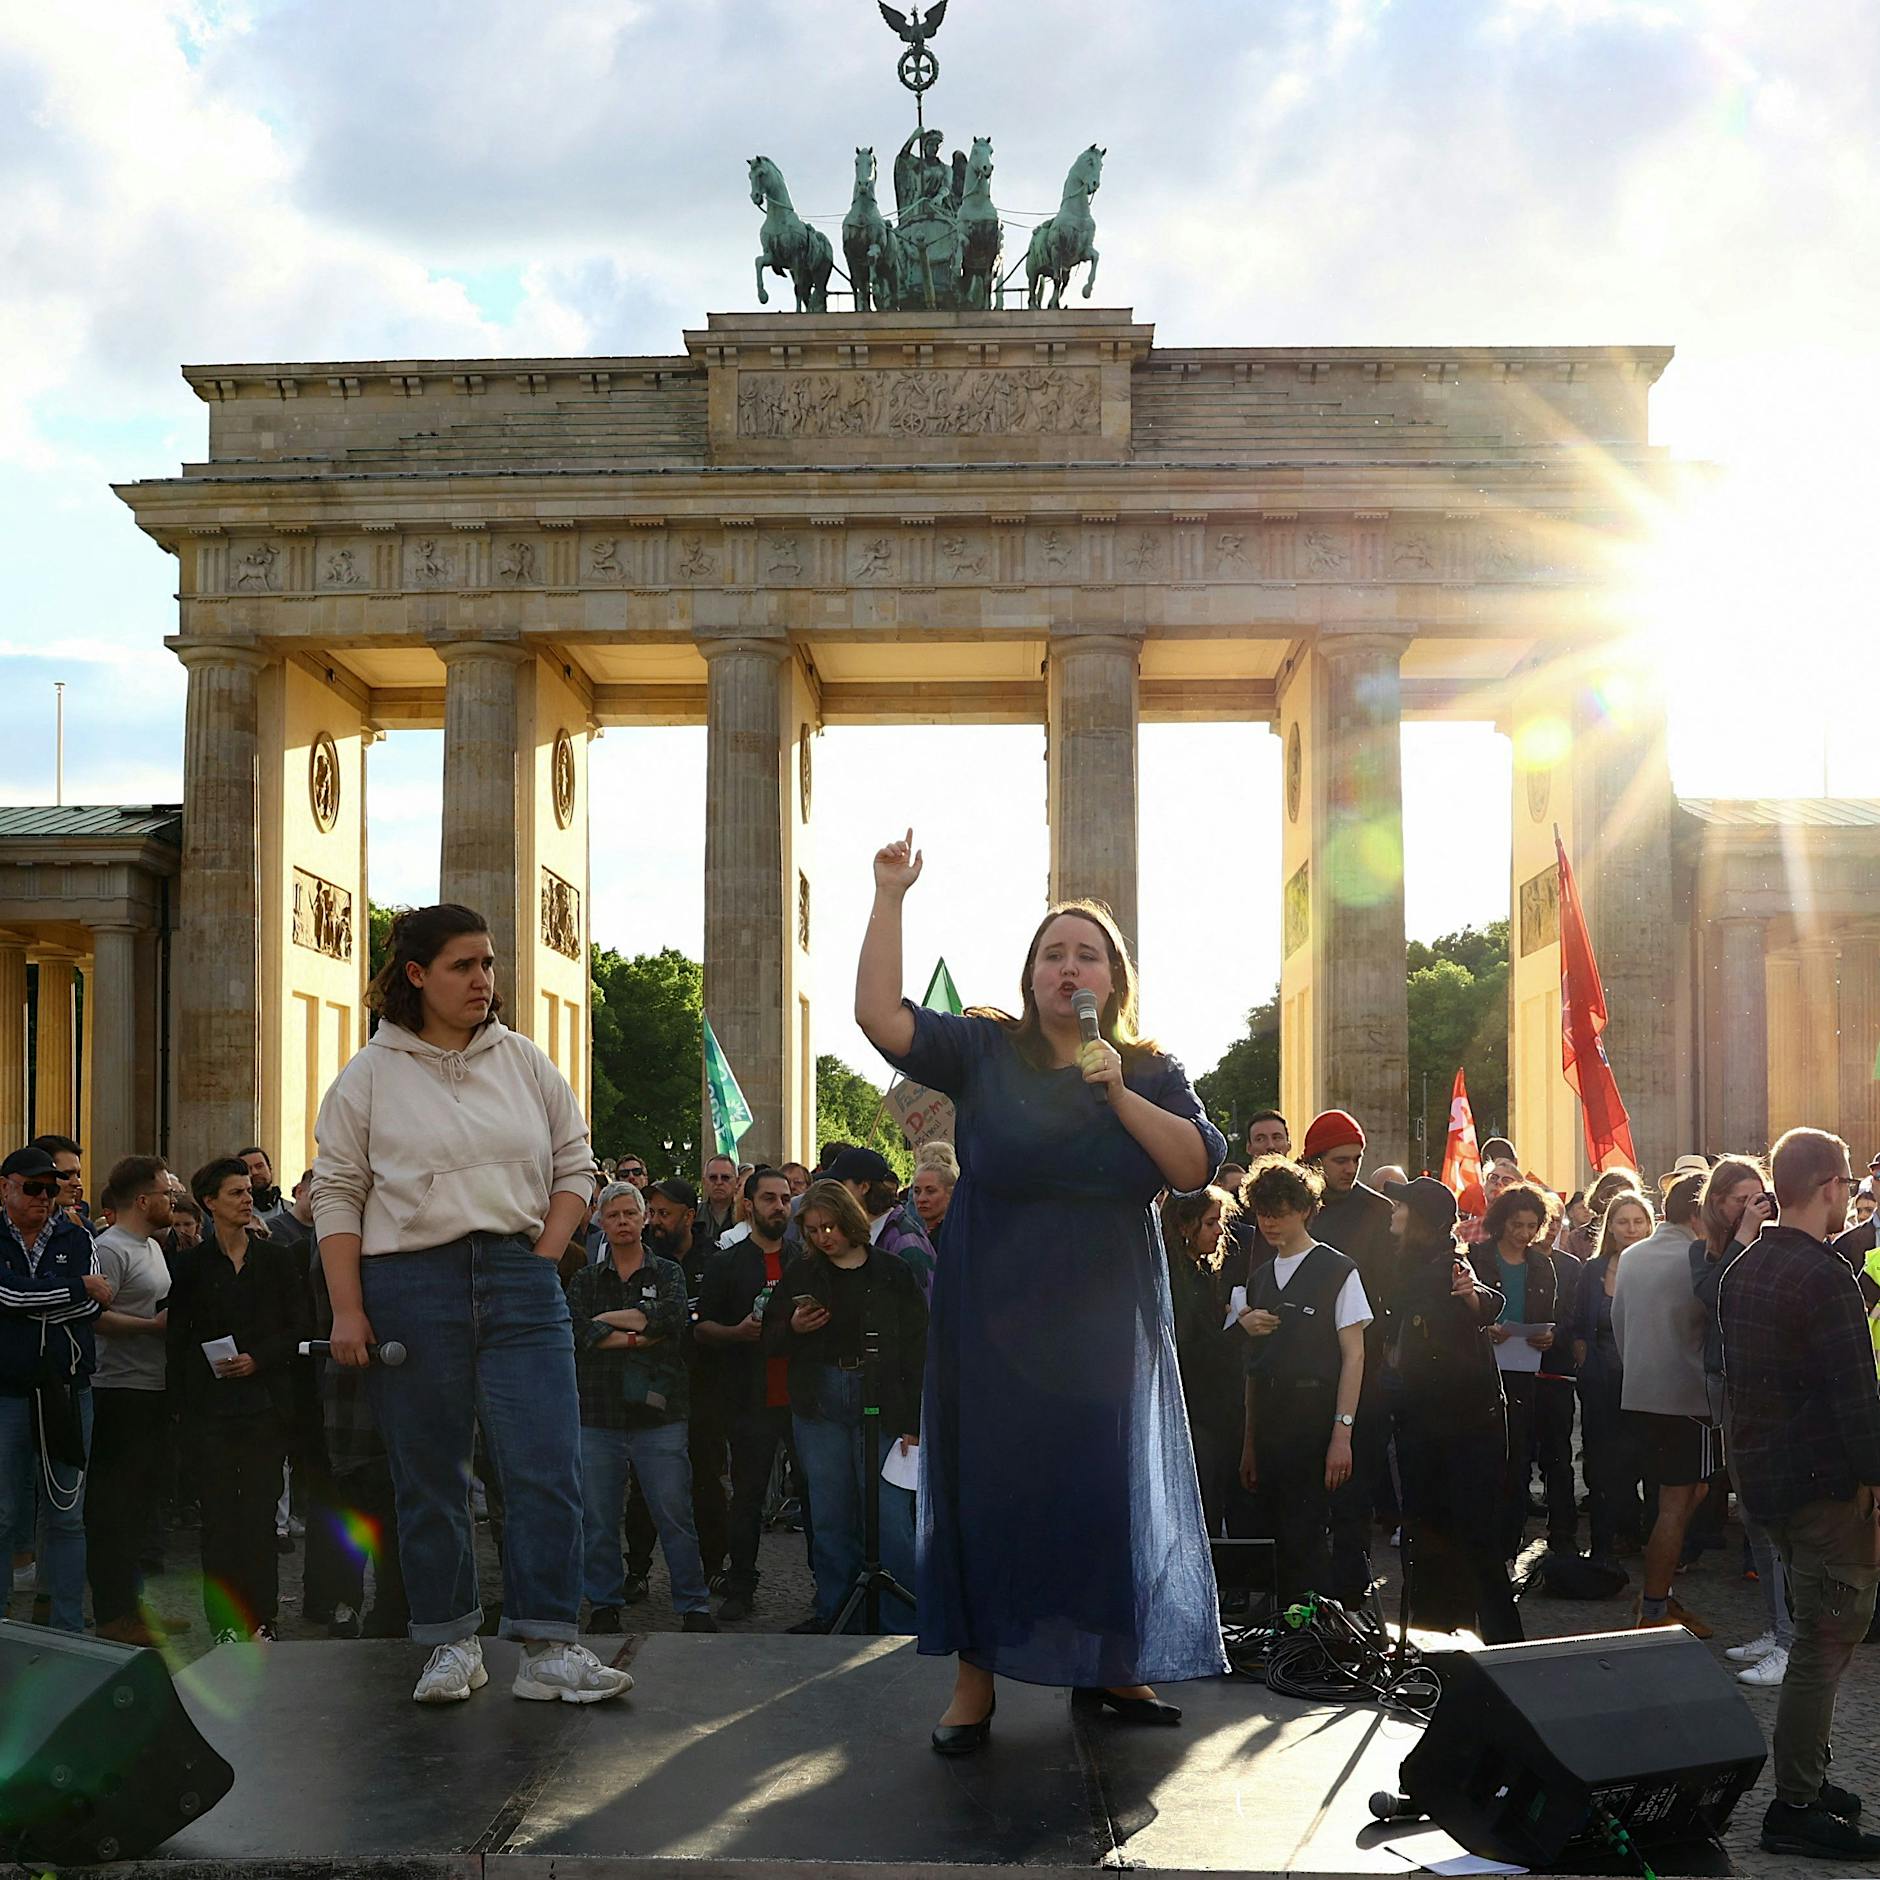 Angriff auf Matthias Ecke: Mehr als 100 Politiker unterzeichnen Erklärung – Kundgebung in Berlin